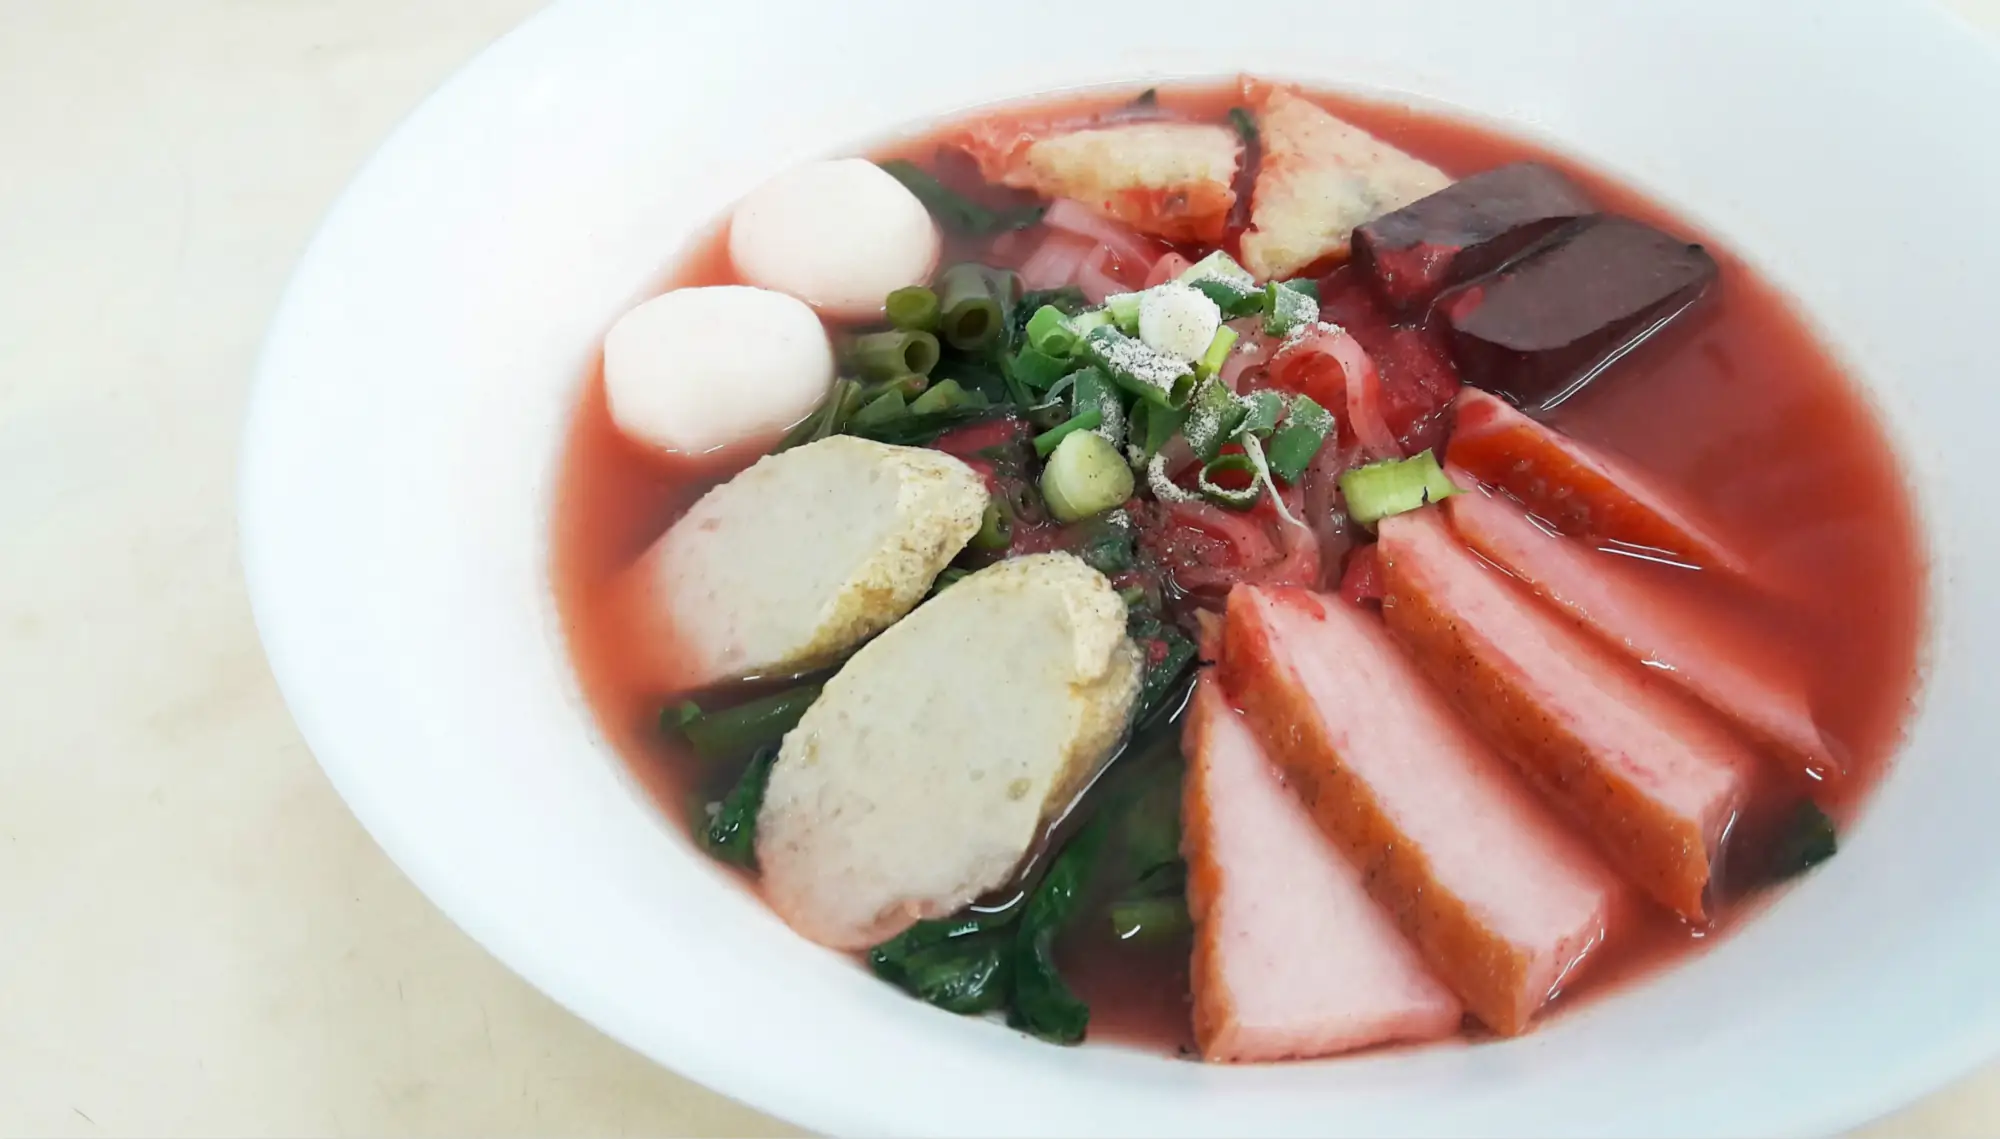 汤头呈现粉红色的泰式粿条腌豆腐，是当地家喻户晓的泰国小吃